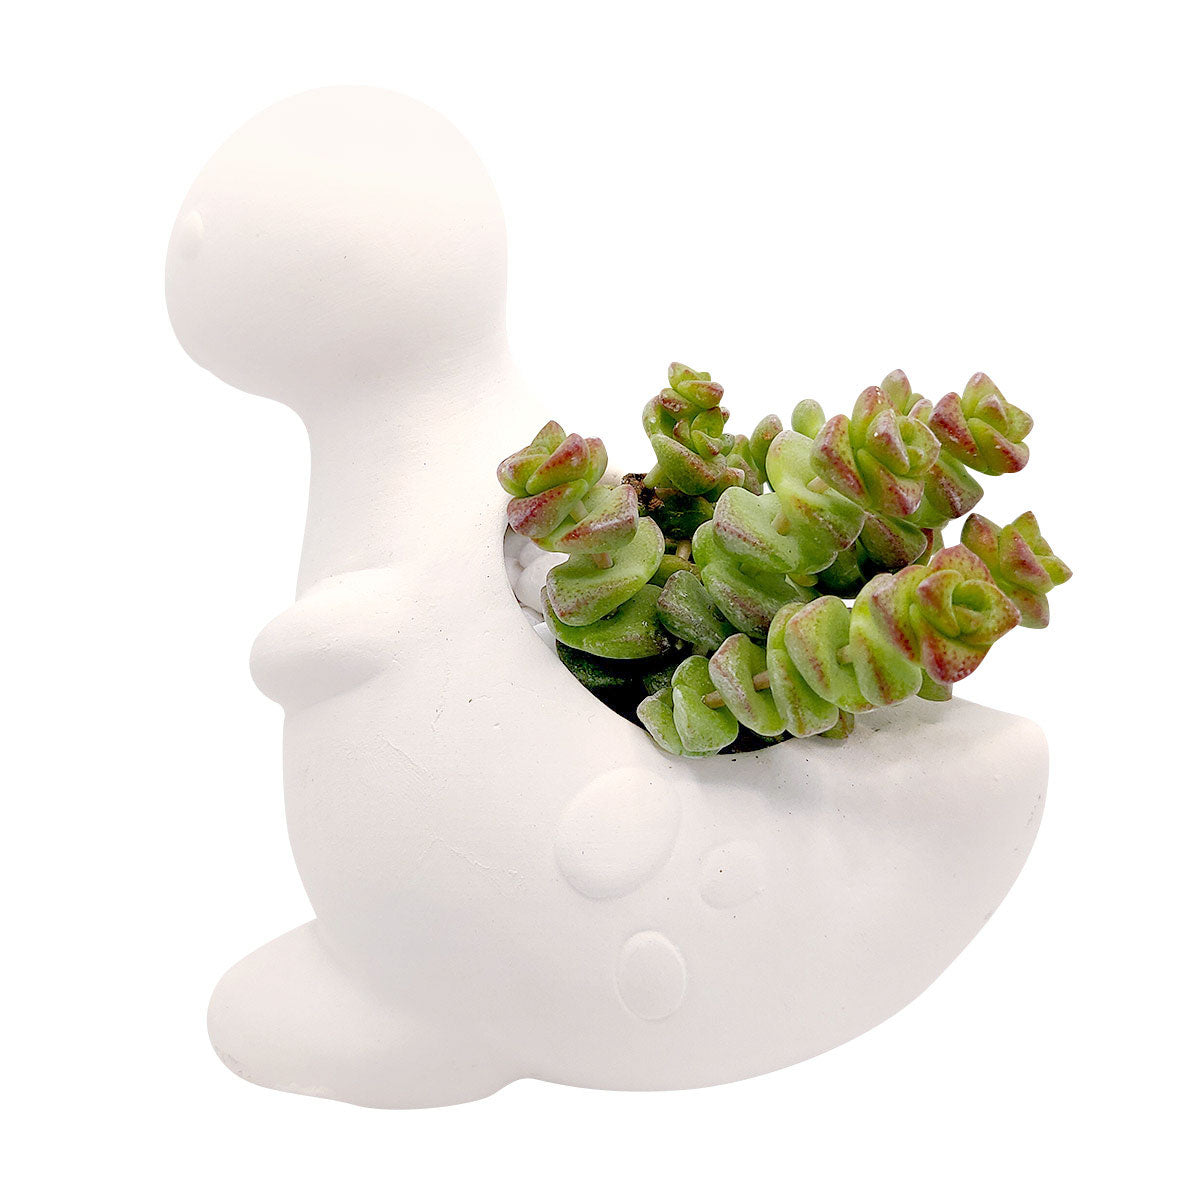 DIY Ceramic Dinosaur Pot for sale, White Ceramic Succulent Planter, Cute Animals Pot, White Succulent Pot, Crafts for Kids, DIY Succulent Gift Ideas